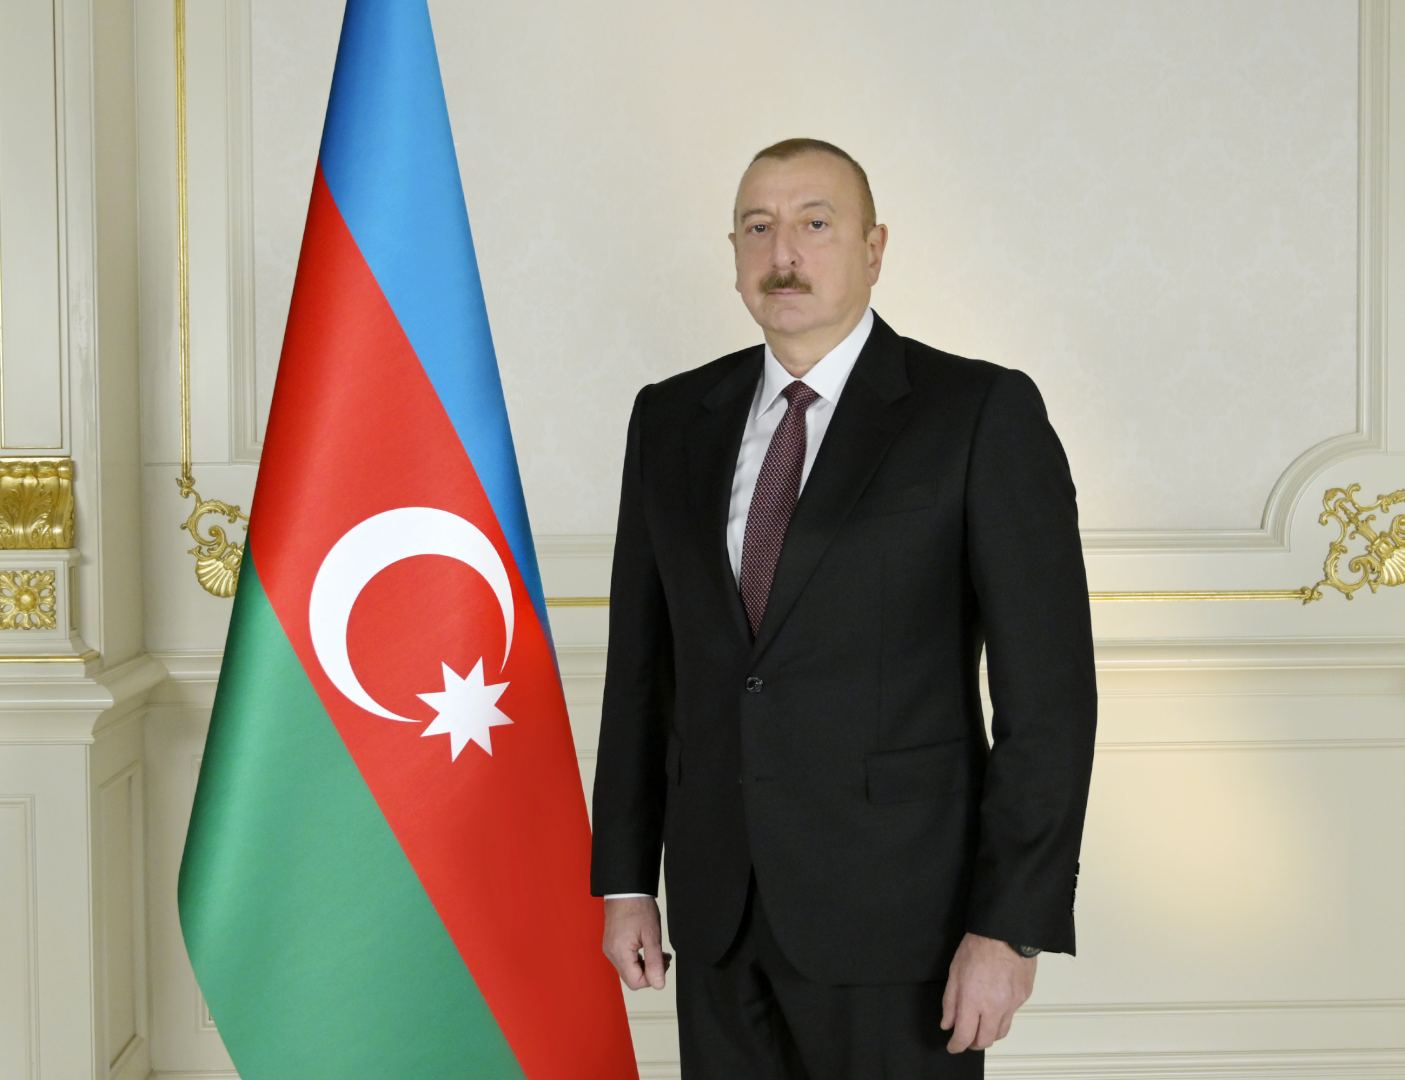 Президент Ильхам Алиев: Если кто-то впредь попытается оскорбить азербайджанский народ, то он получит такой урок, который не сравнится с этой 44-дневной войной